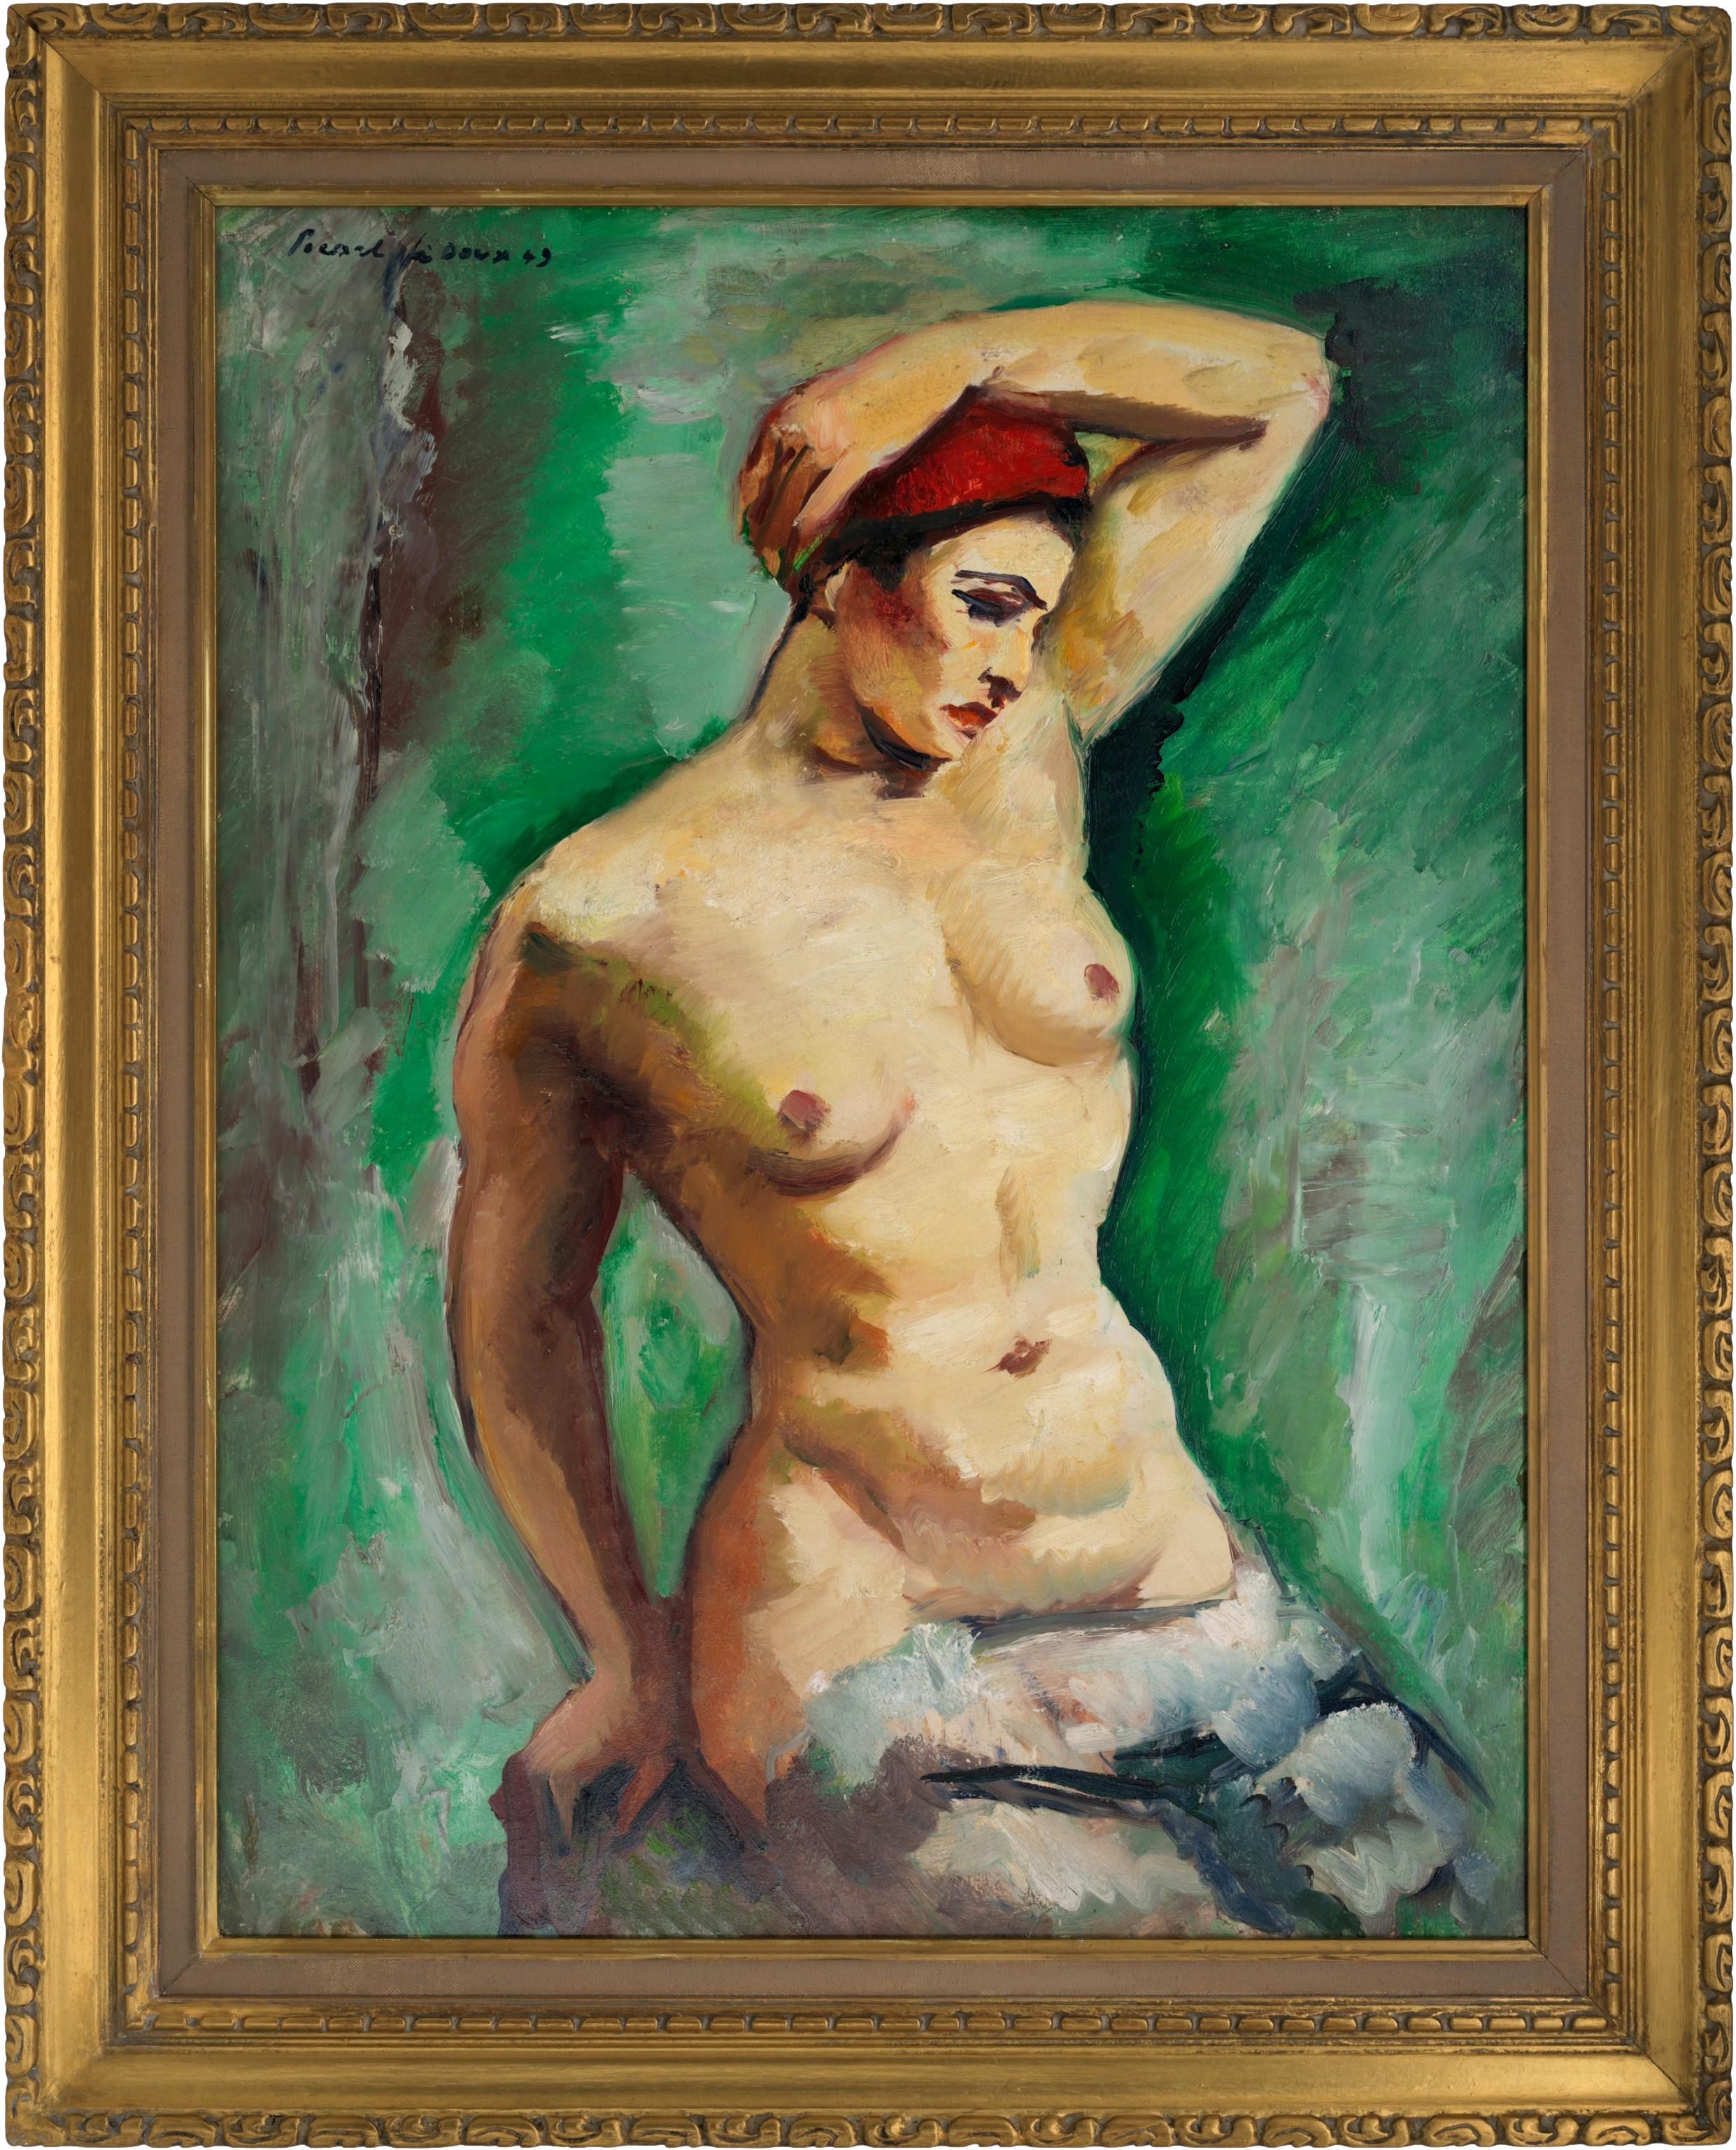 Charles PICART LE DOUX, Modell auf grünem Hintergrund, Öl auf Isorel, 1949